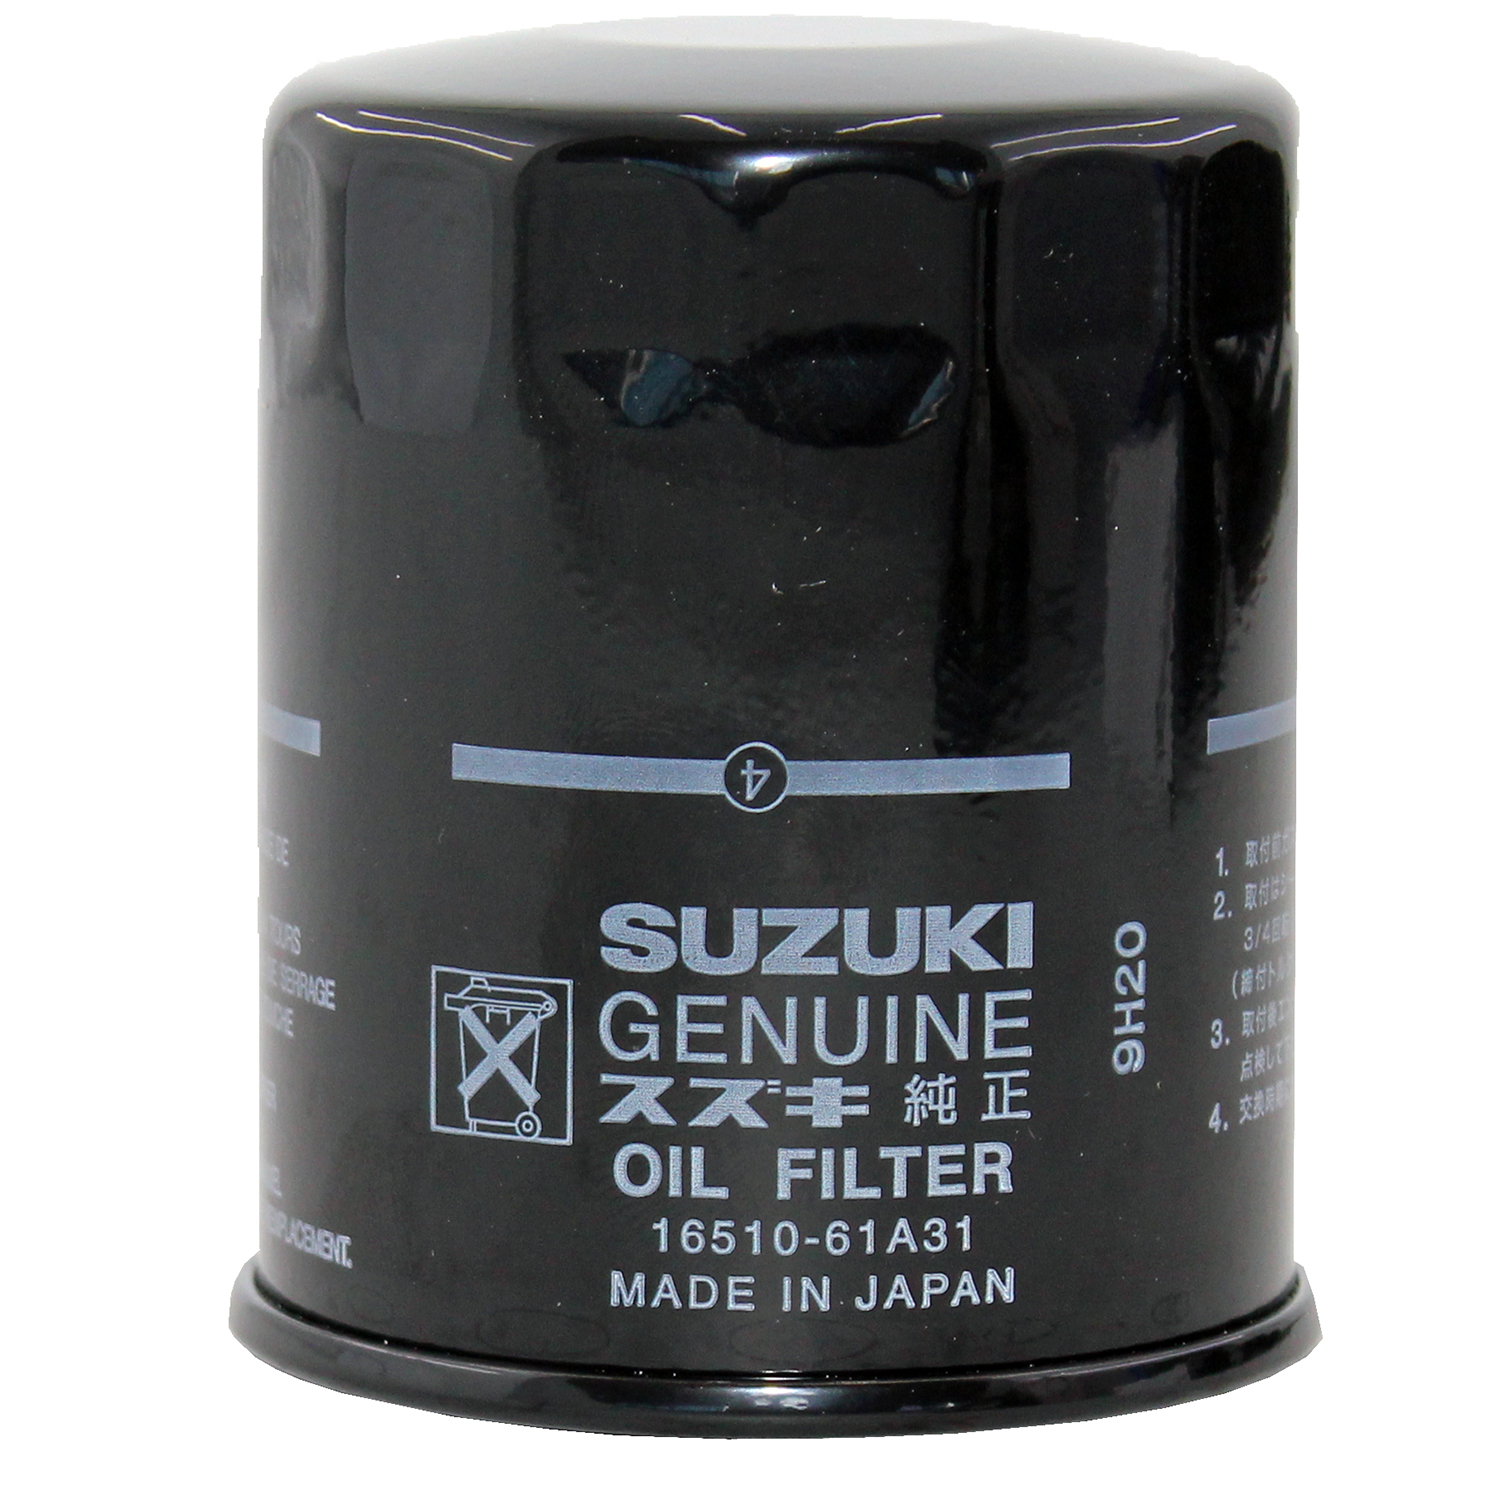 فیلتر روغن خودرو سوزوکی مدل 61A31 مناسب برای سوزوکی گراند ویتارا